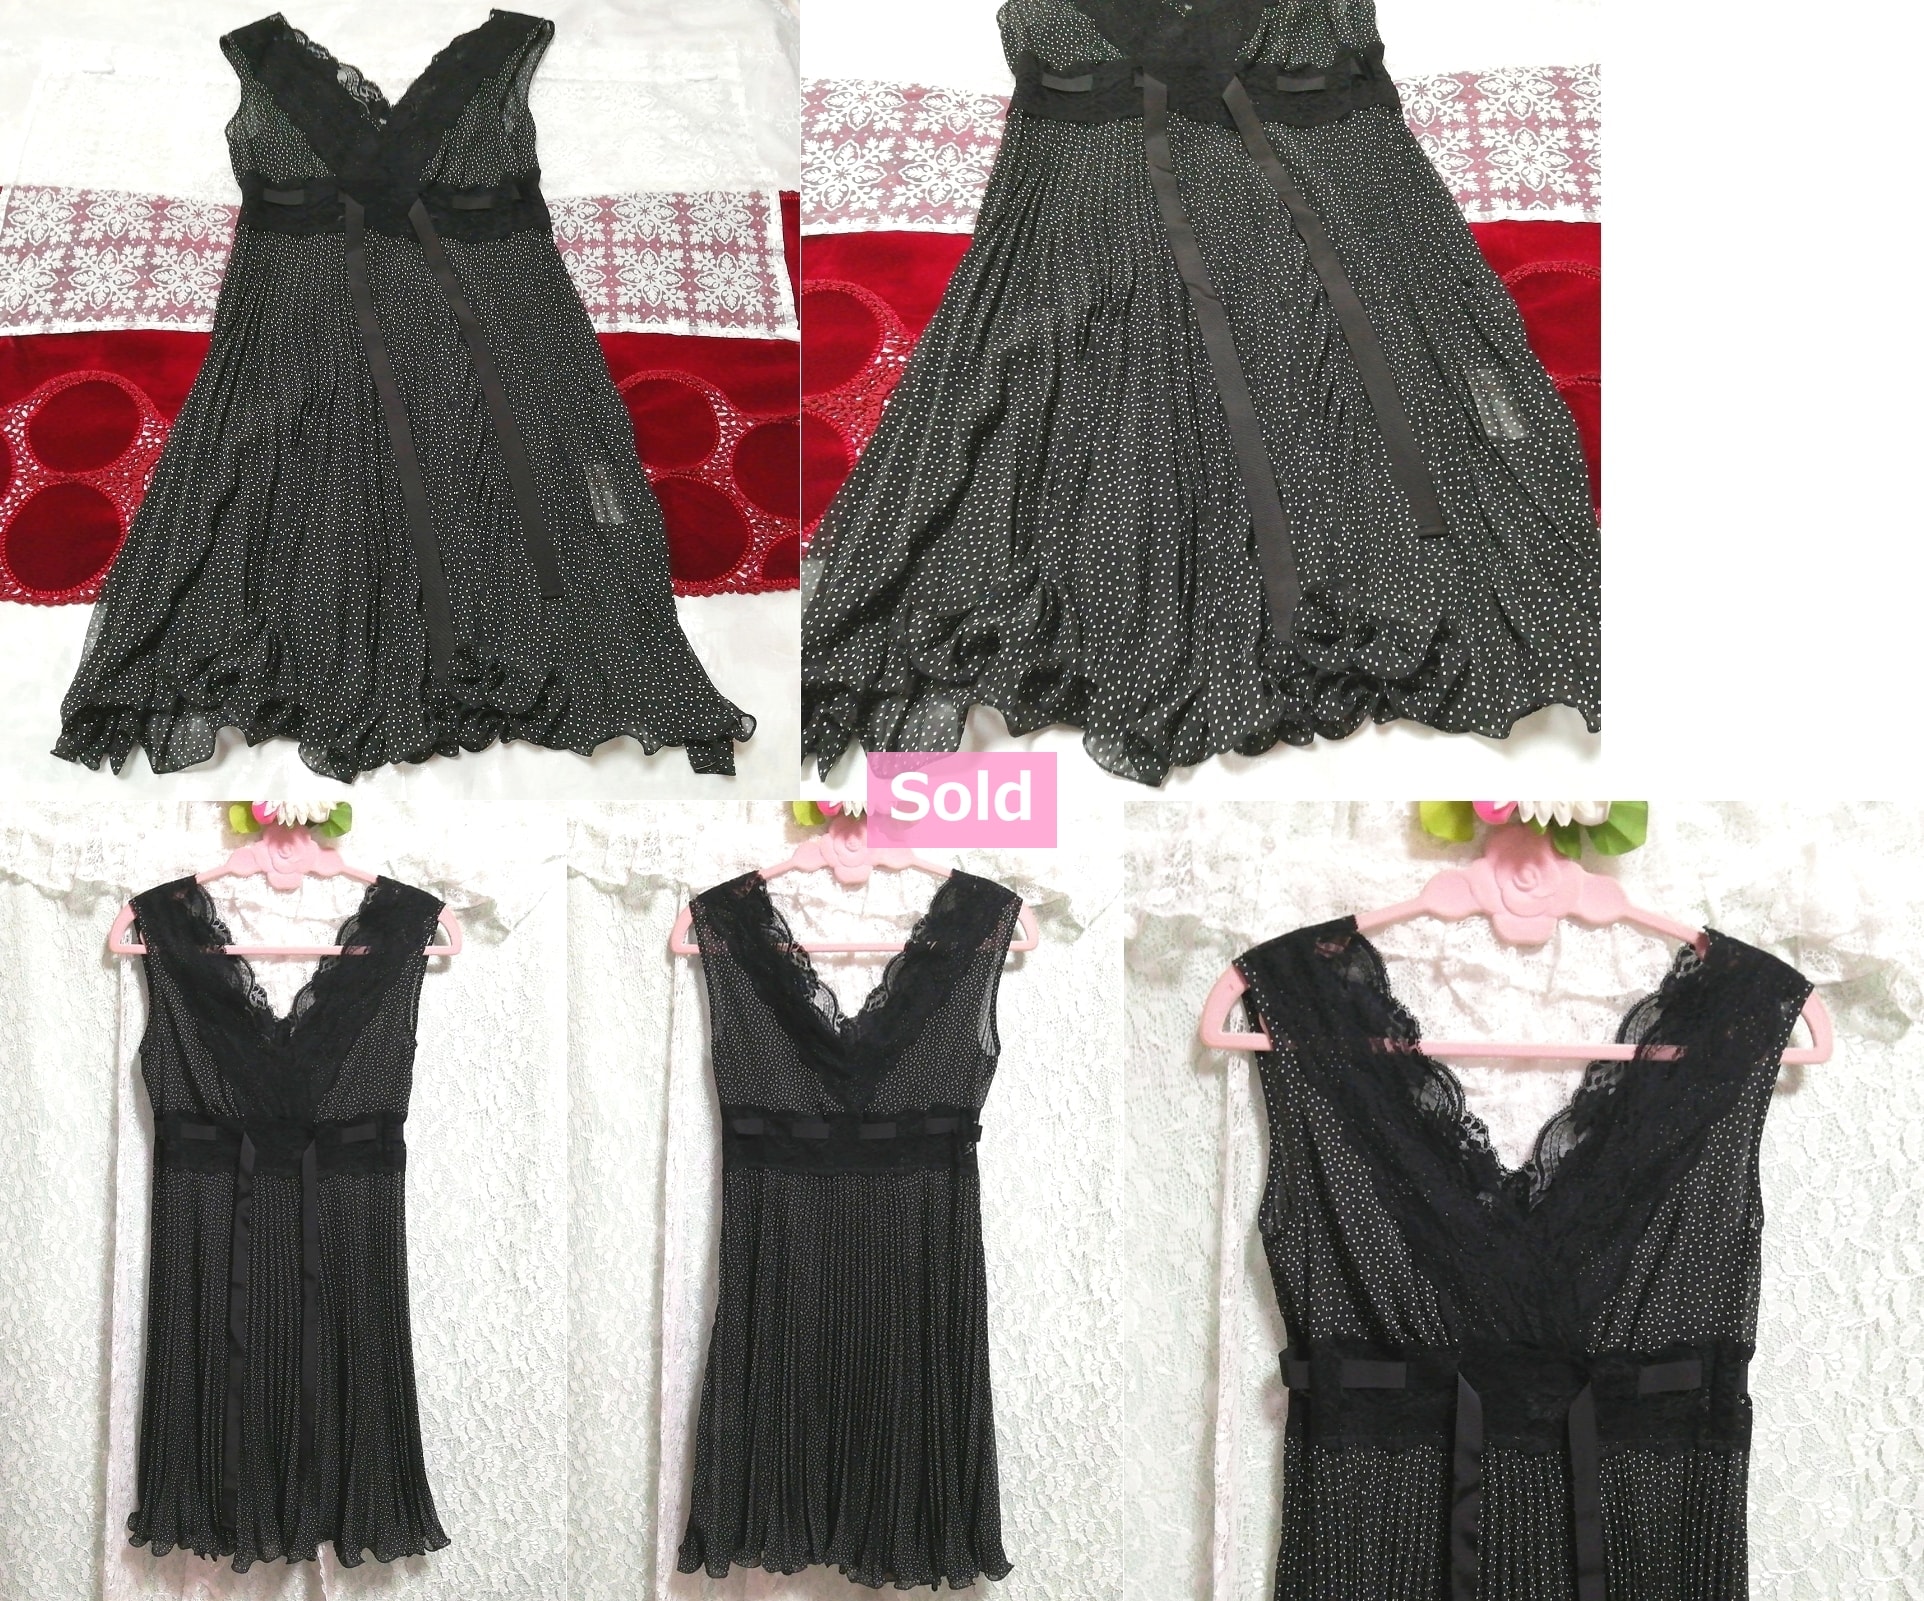 블랙 레이스 폴카 도트 쉬폰 네글리제 나이트가운 나이트웨어 민소매 드레스, 패션, 숙녀 패션, 잠옷, 잠옷